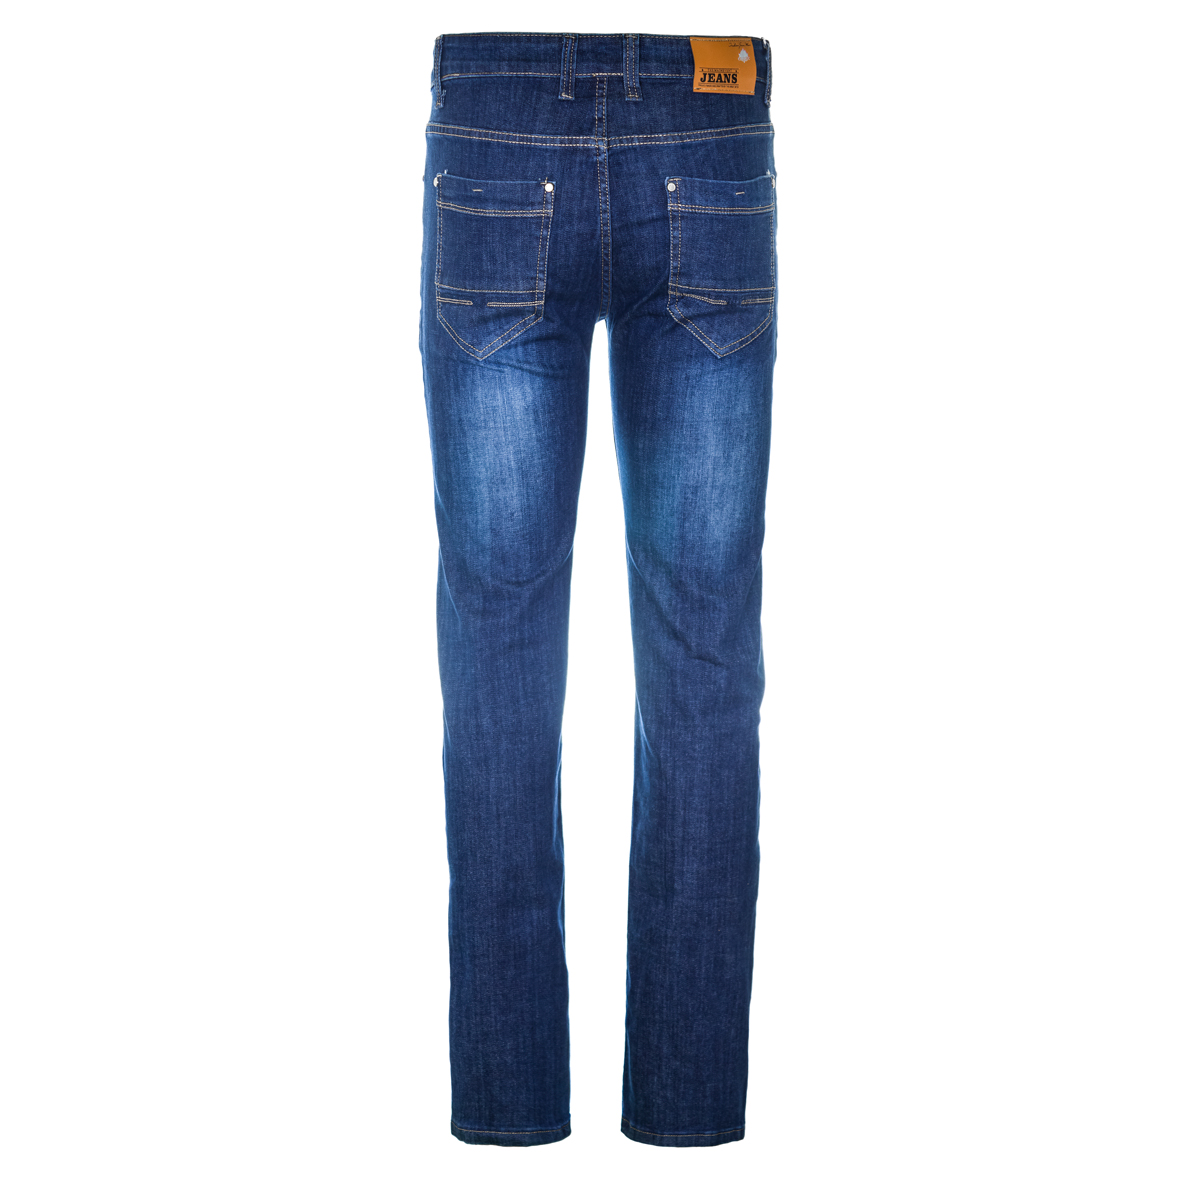 Муж. джинсы арт. 12-0094 Синий р. 31 Китай, размер 31 - фото 3